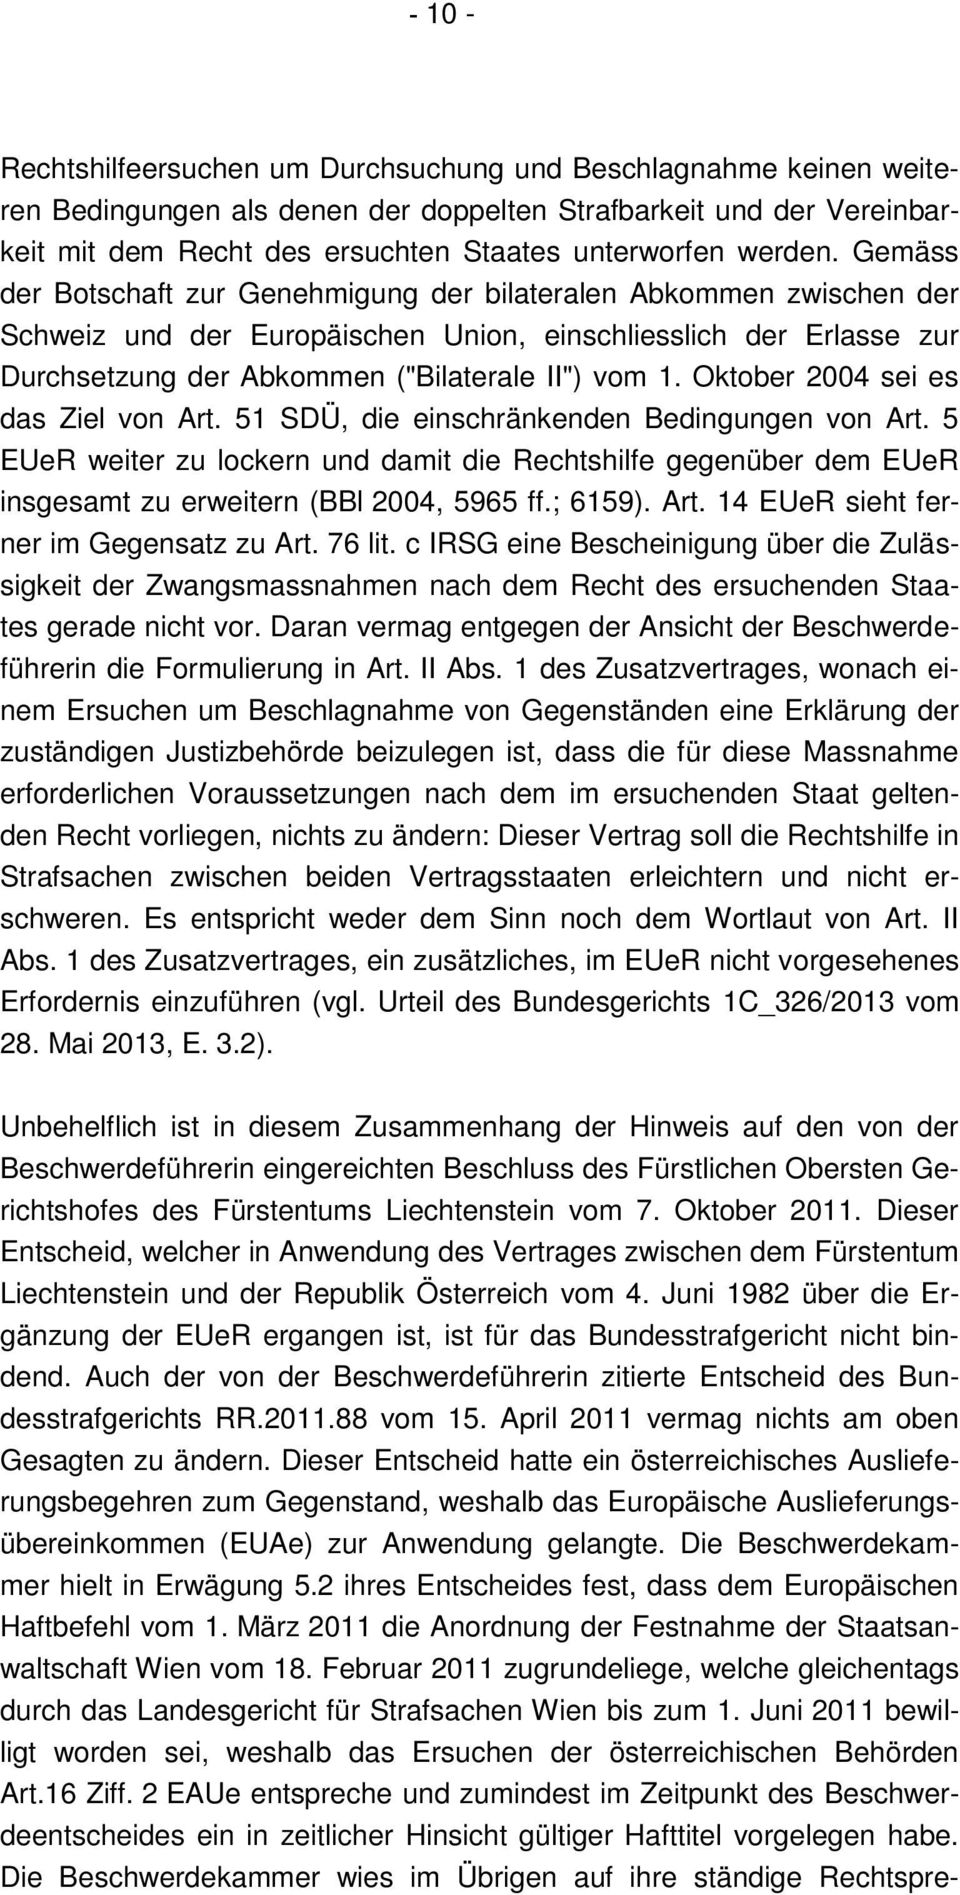 Gemäss der Botschaft zur Genehmigung der bilateralen Abkommen zwischen der Schweiz und der Europäischen Union, einschliesslich der Erlasse zur Durchsetzung der Abkommen ("Bilaterale II") vom 1.